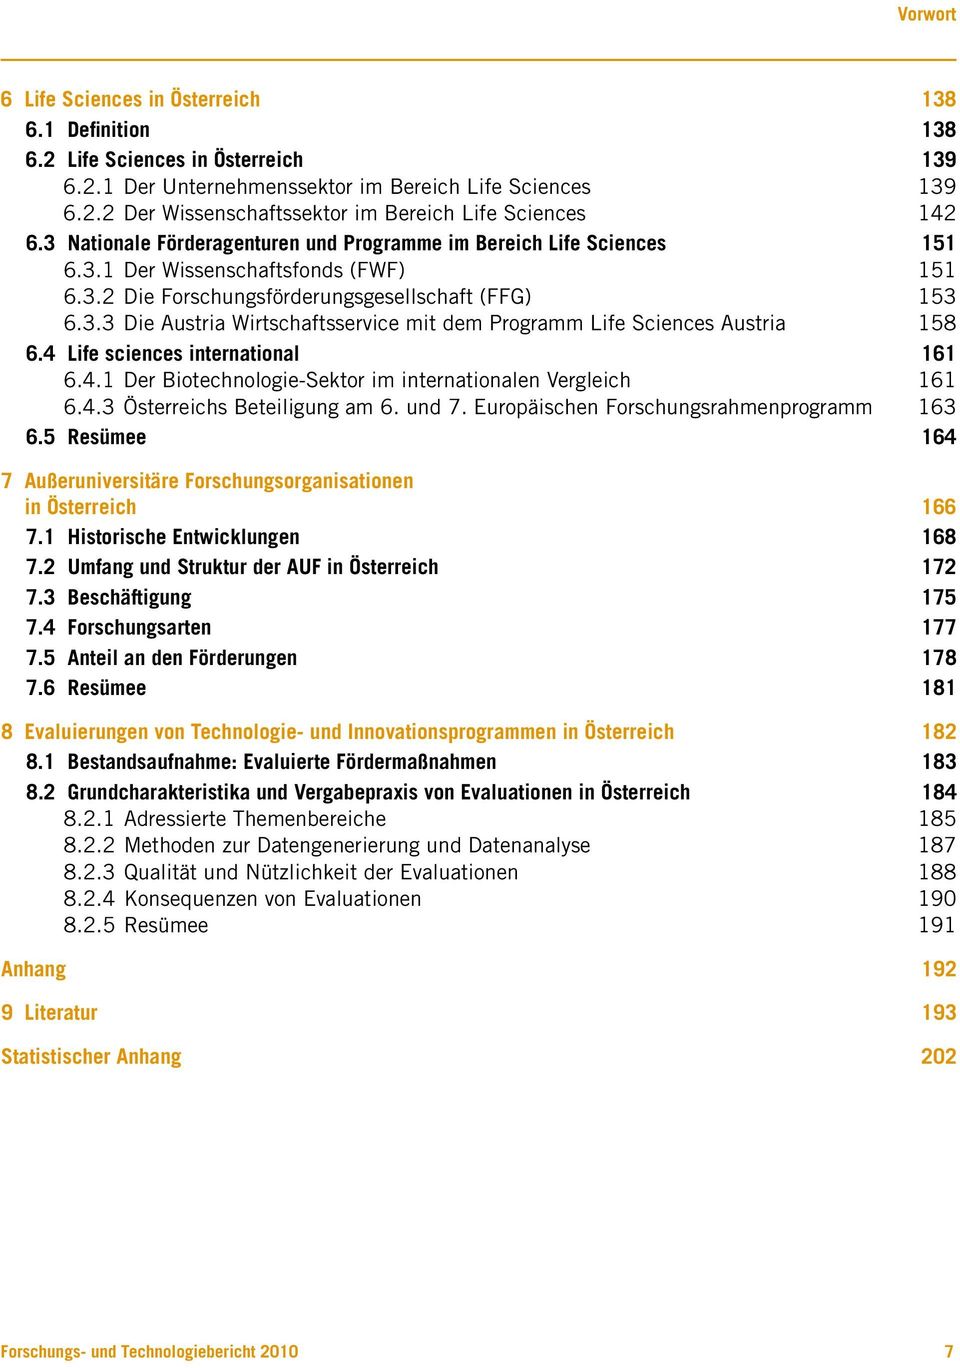 4 Life sciences international 161 6.4.1 Der Biotechnologie-Sektor im internationalen Vergleich 161 6.4.3 Österreichs Beteiligung am 6. und 7. Europäischen Forschungsrahmenprogramm 163 6.